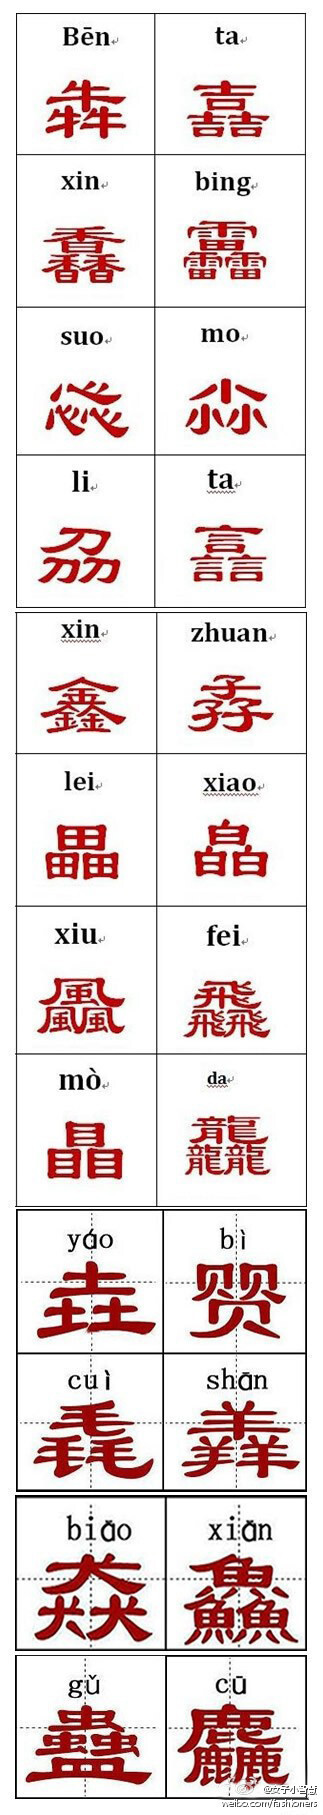 中国难认的汉字图片